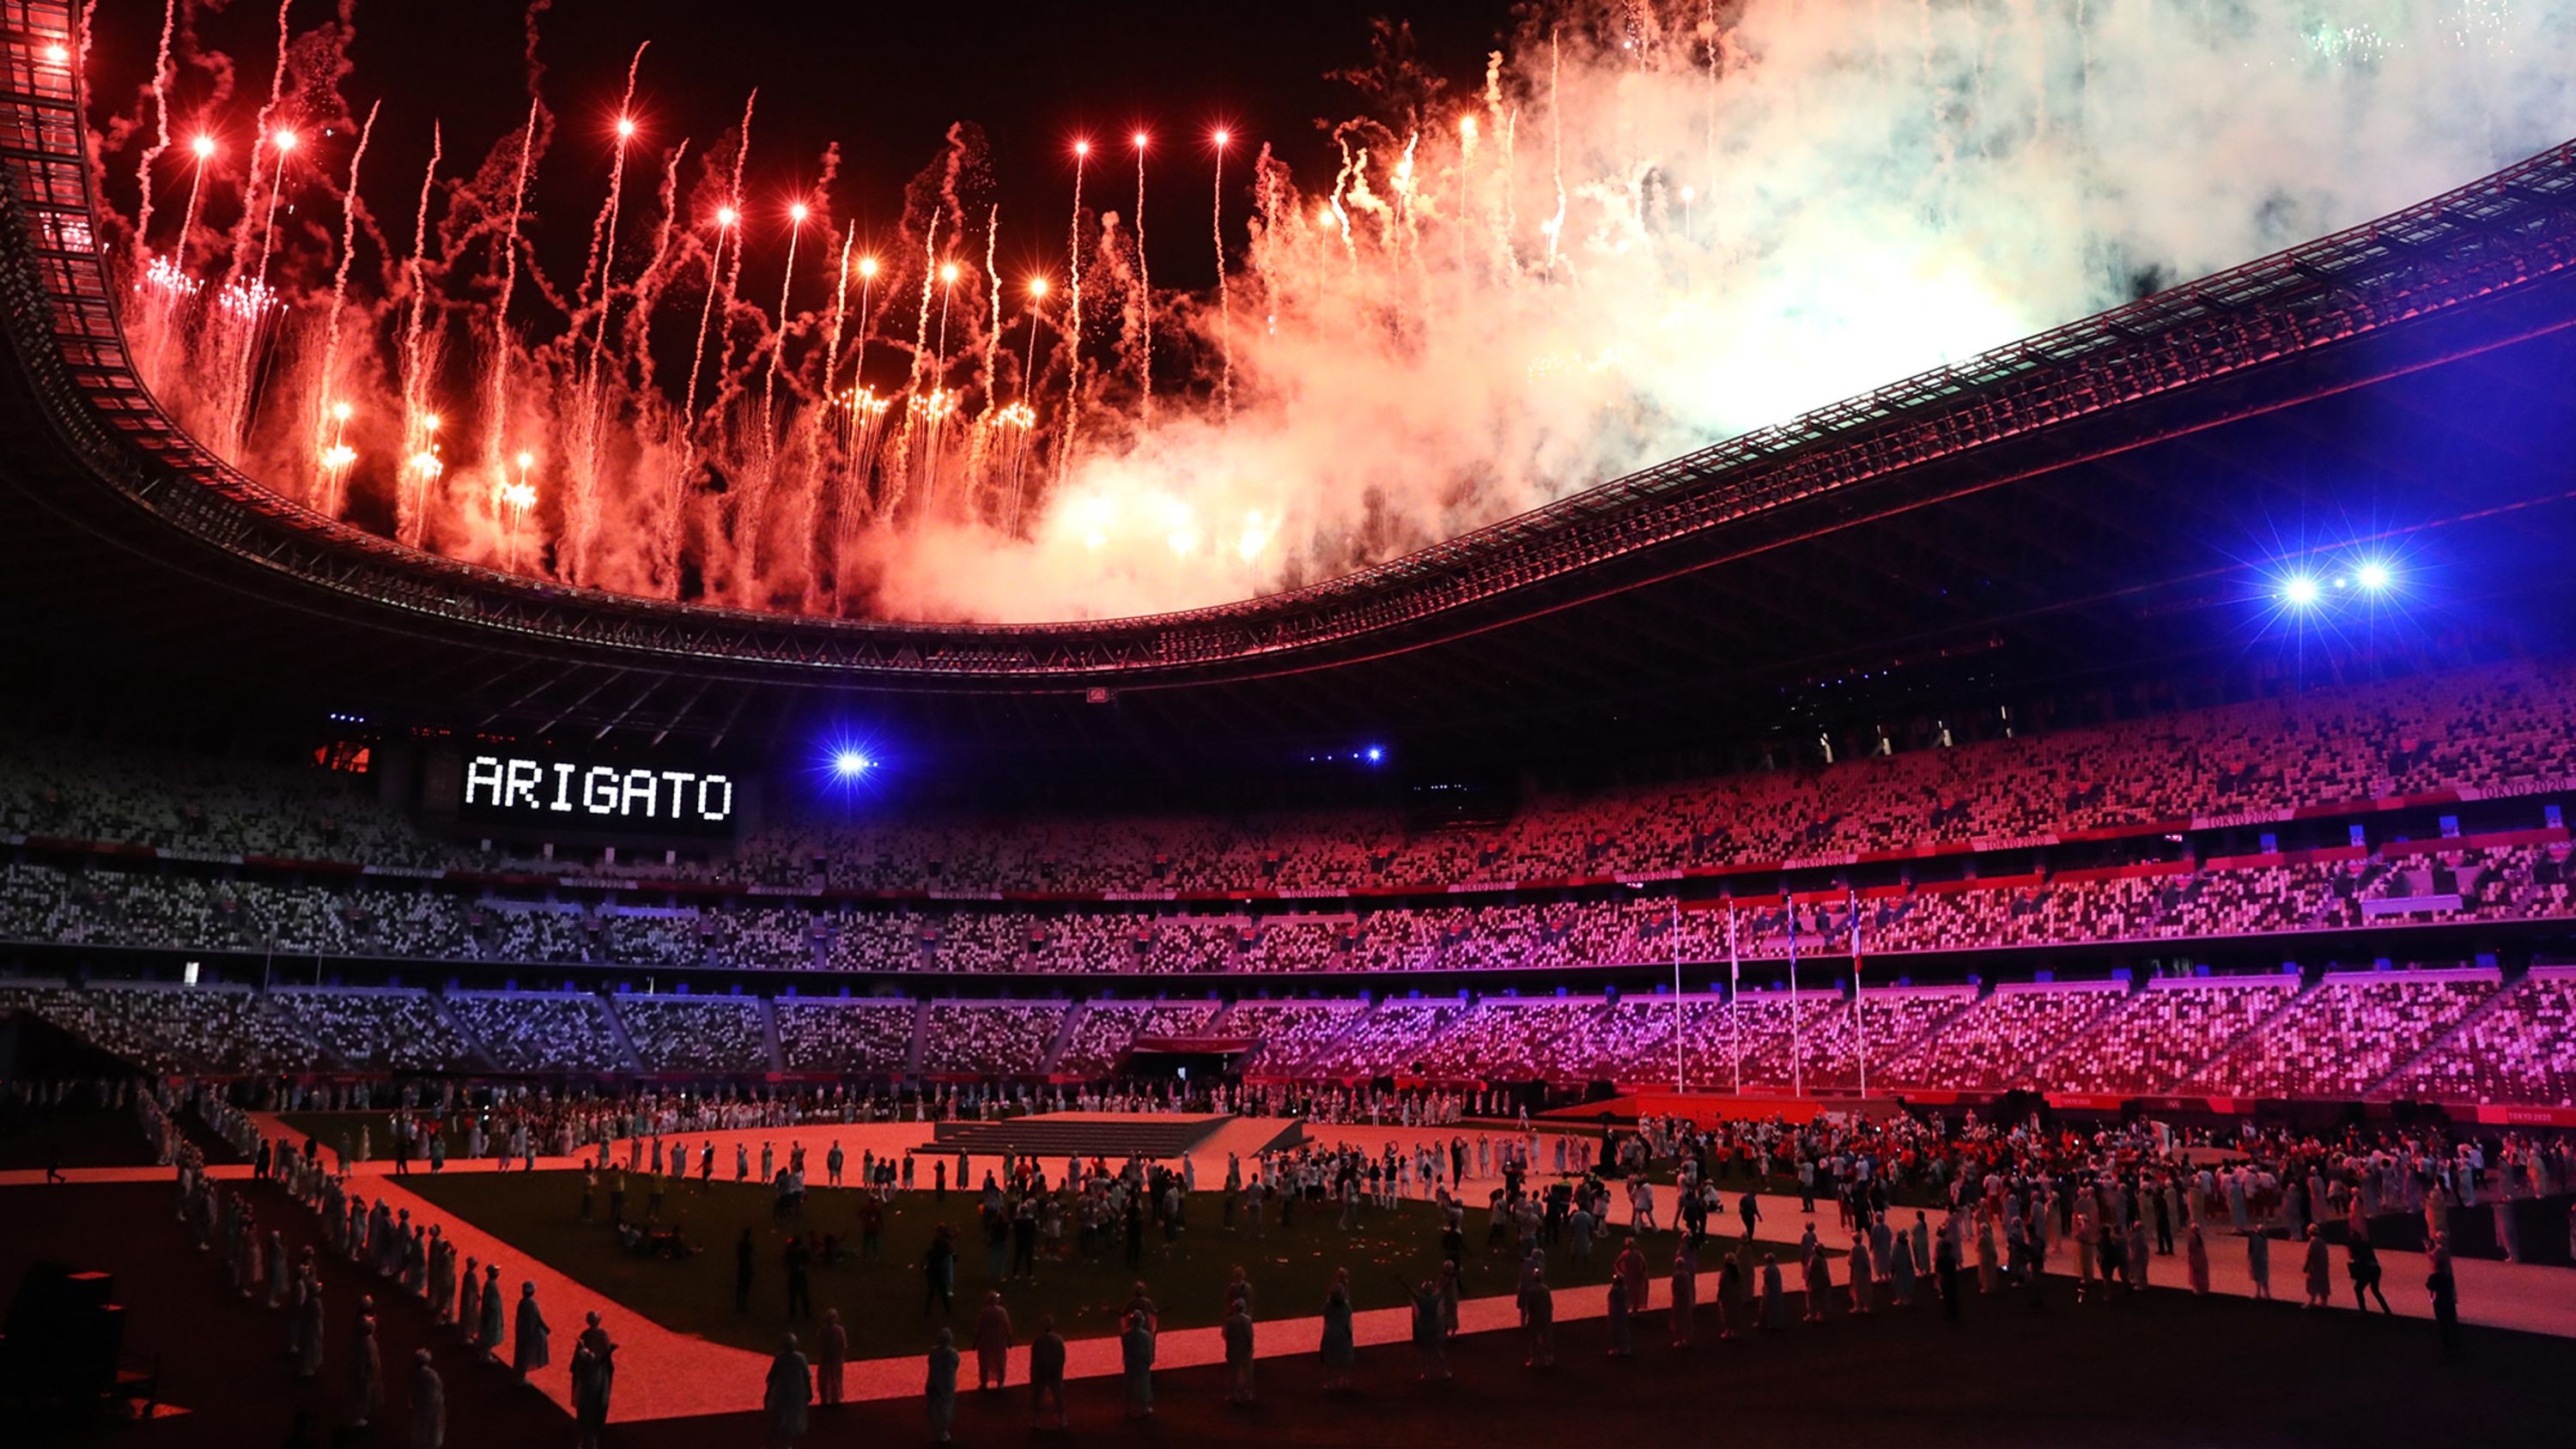 3000px x 1688px - Photos: The 2020 Olympics in Tokyo | CNN